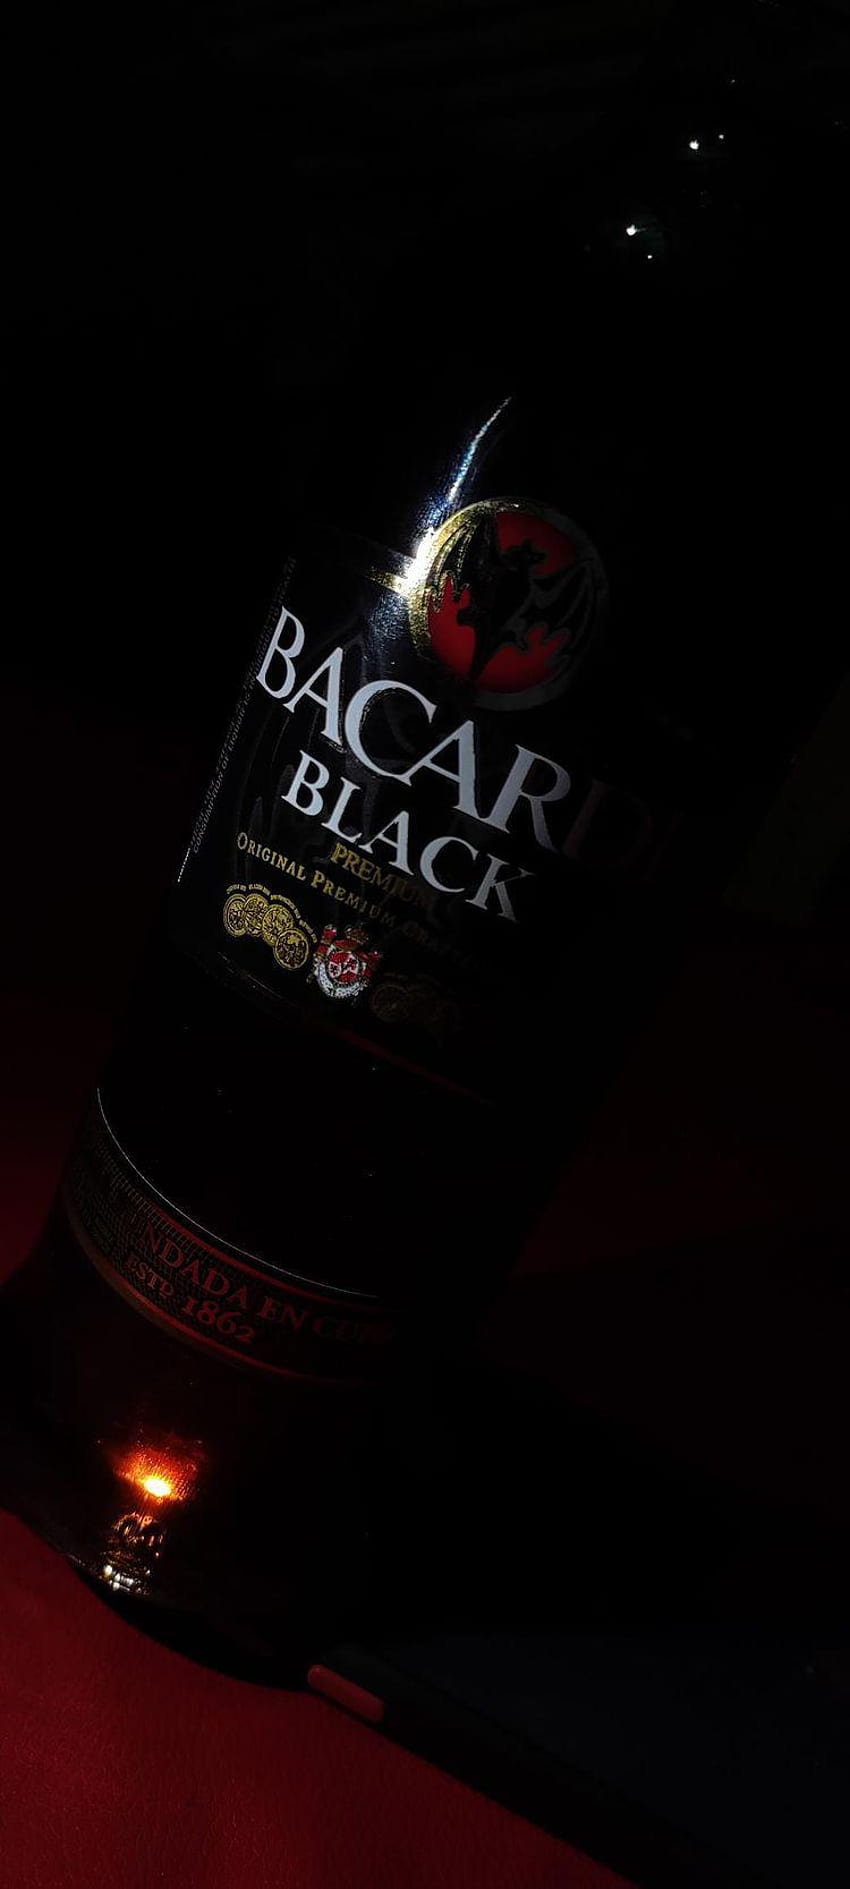 Bacardi black, alcohol, drinkware HD phone wallpaper